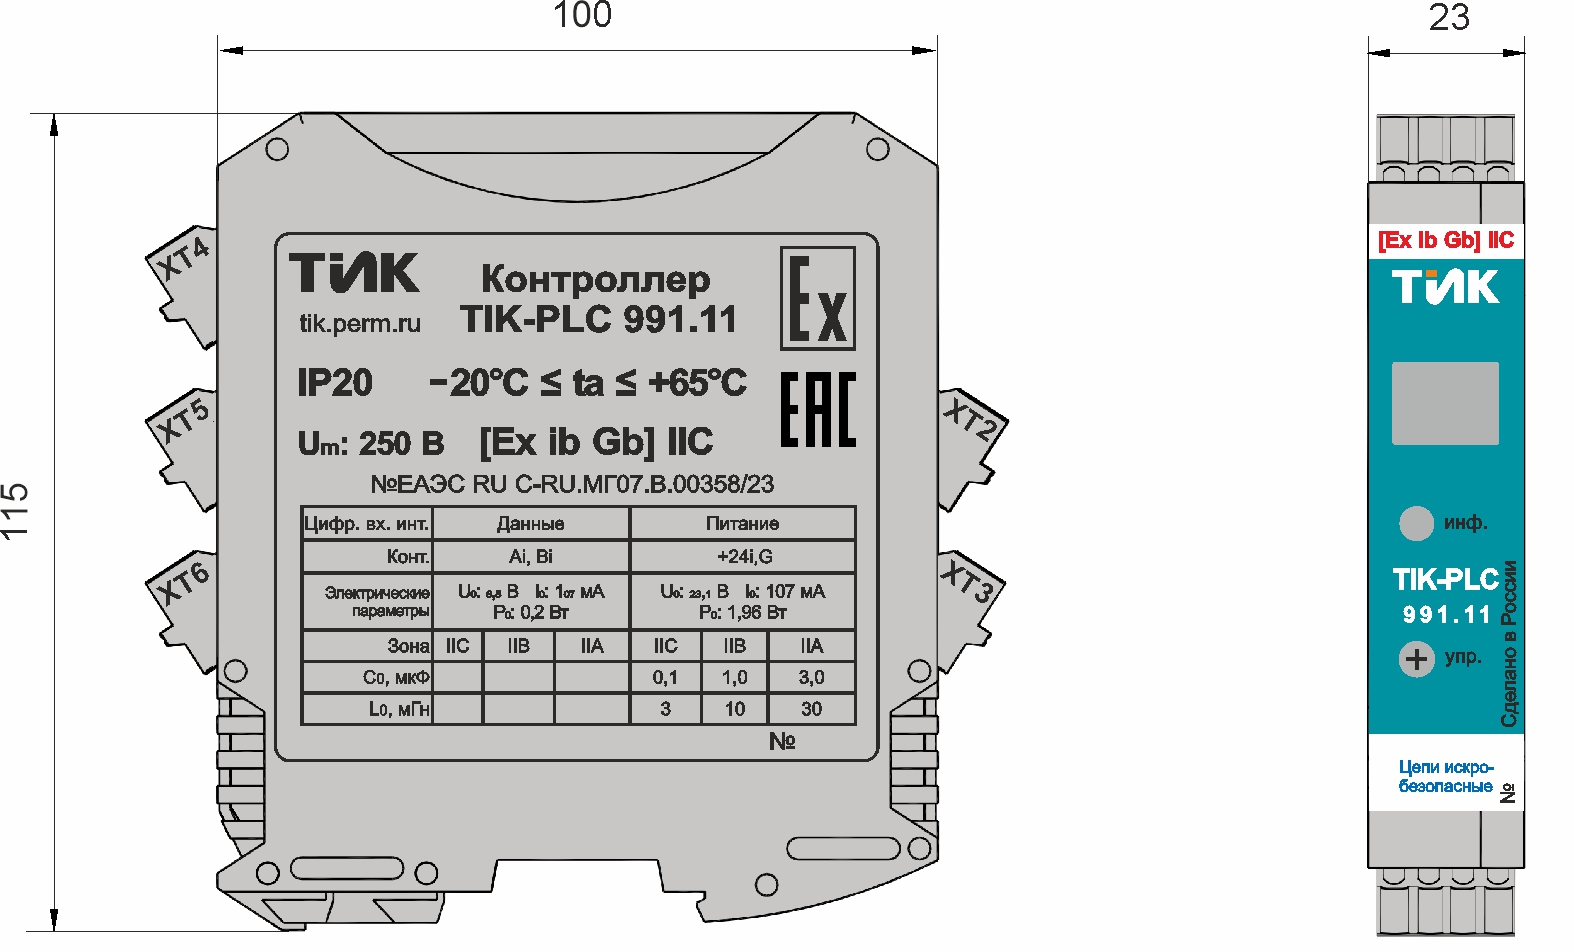 Конструктивное исполнение контроллера TIK-PLC.991.11